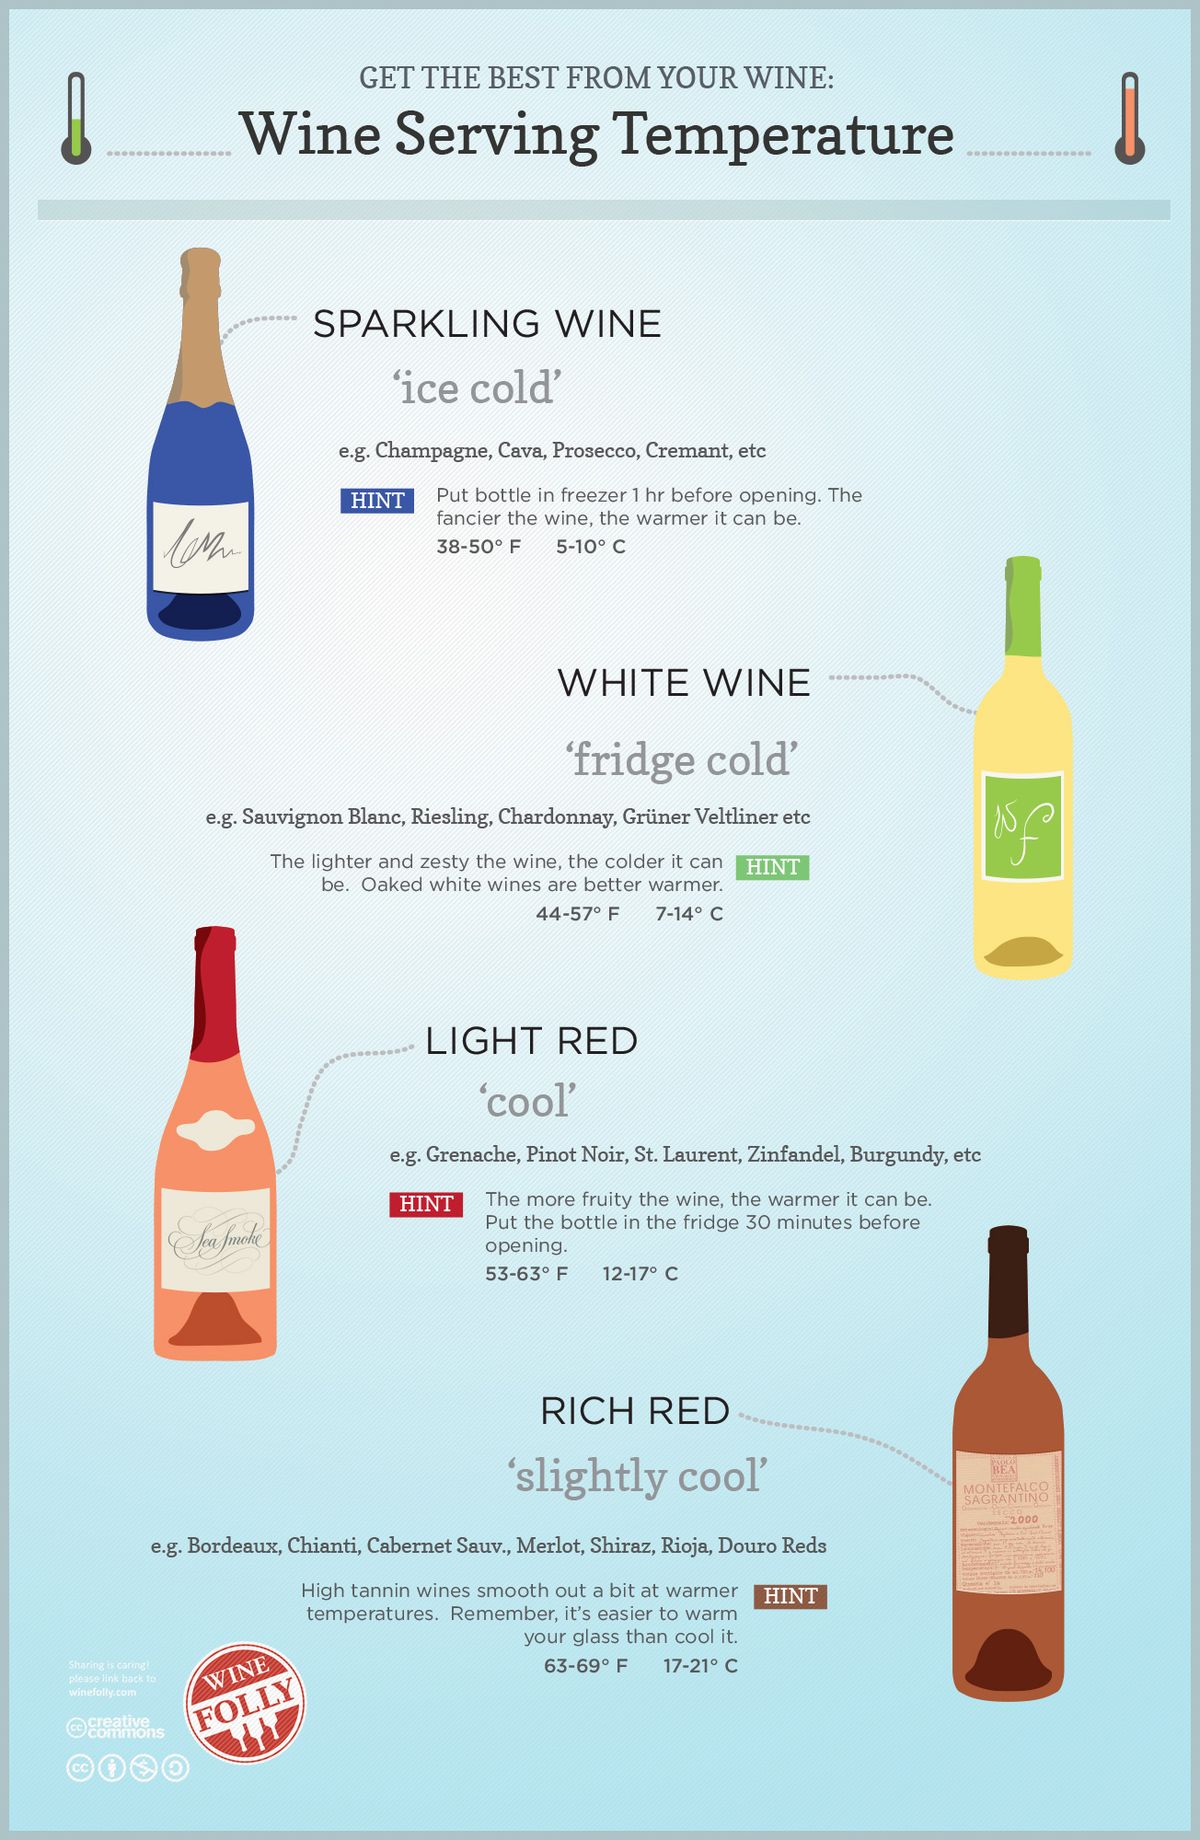 Guide de température de service du vin